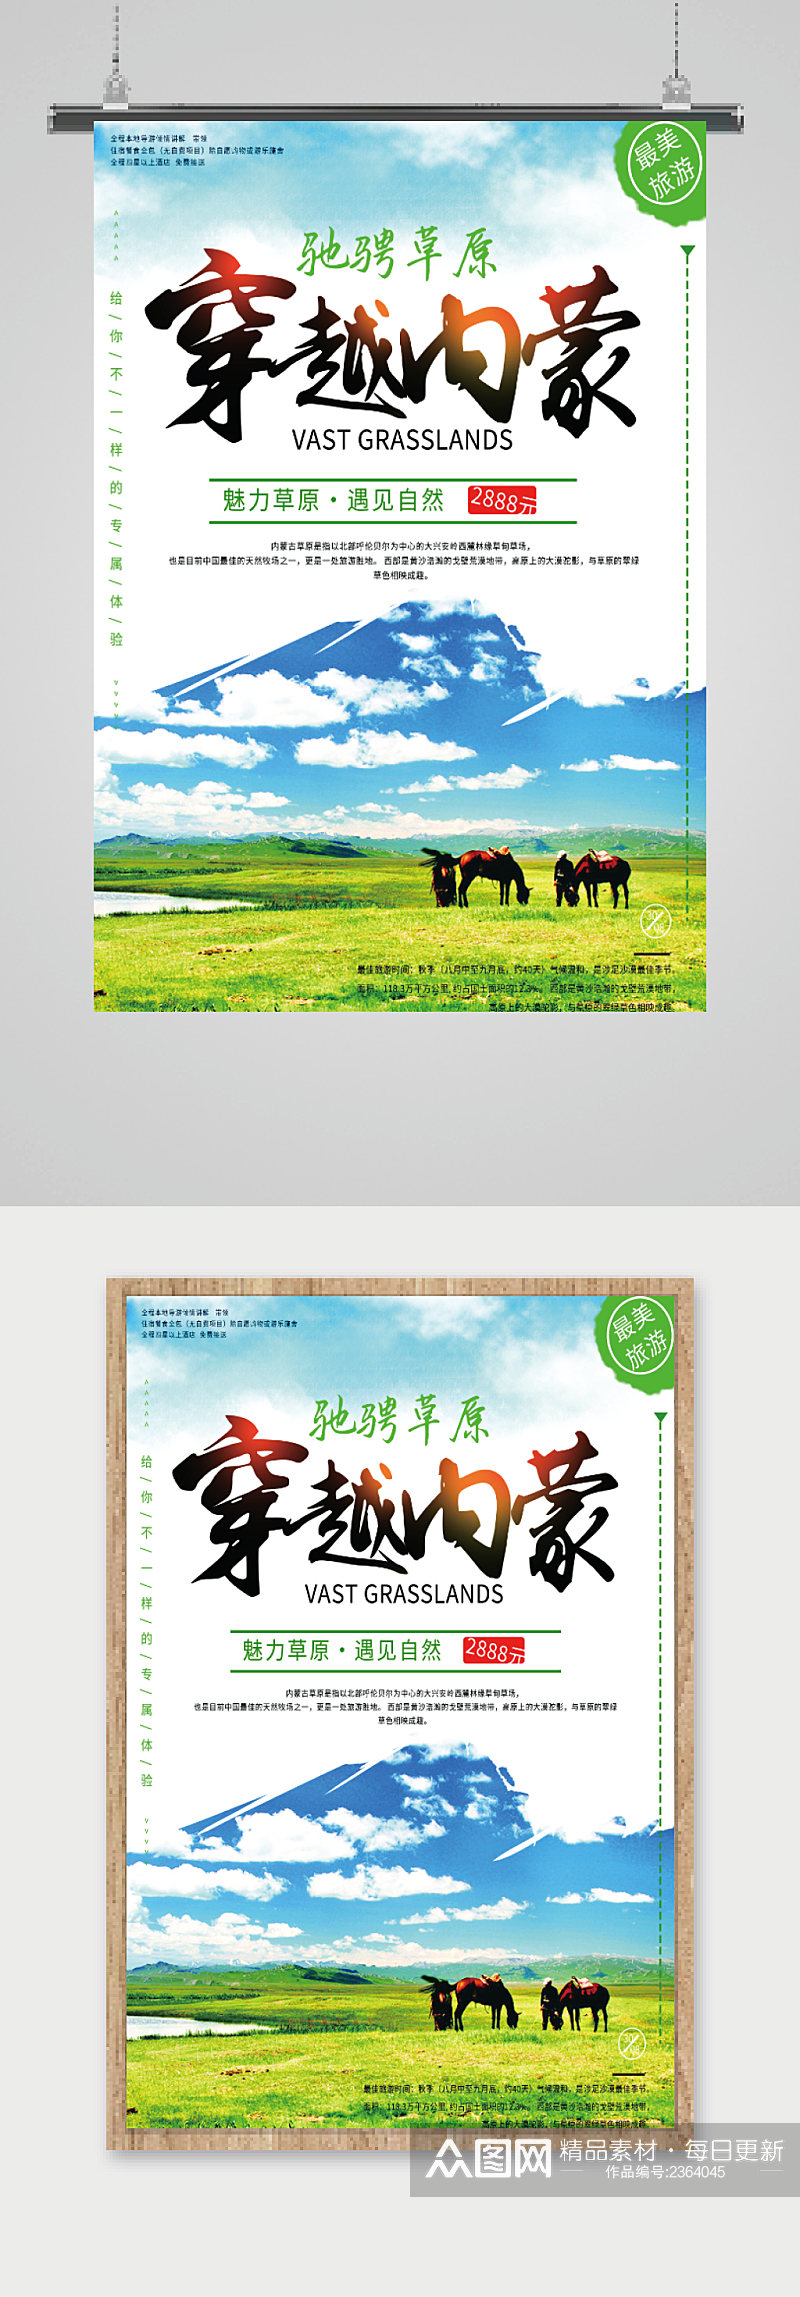 内蒙古旅游宣传海报素材